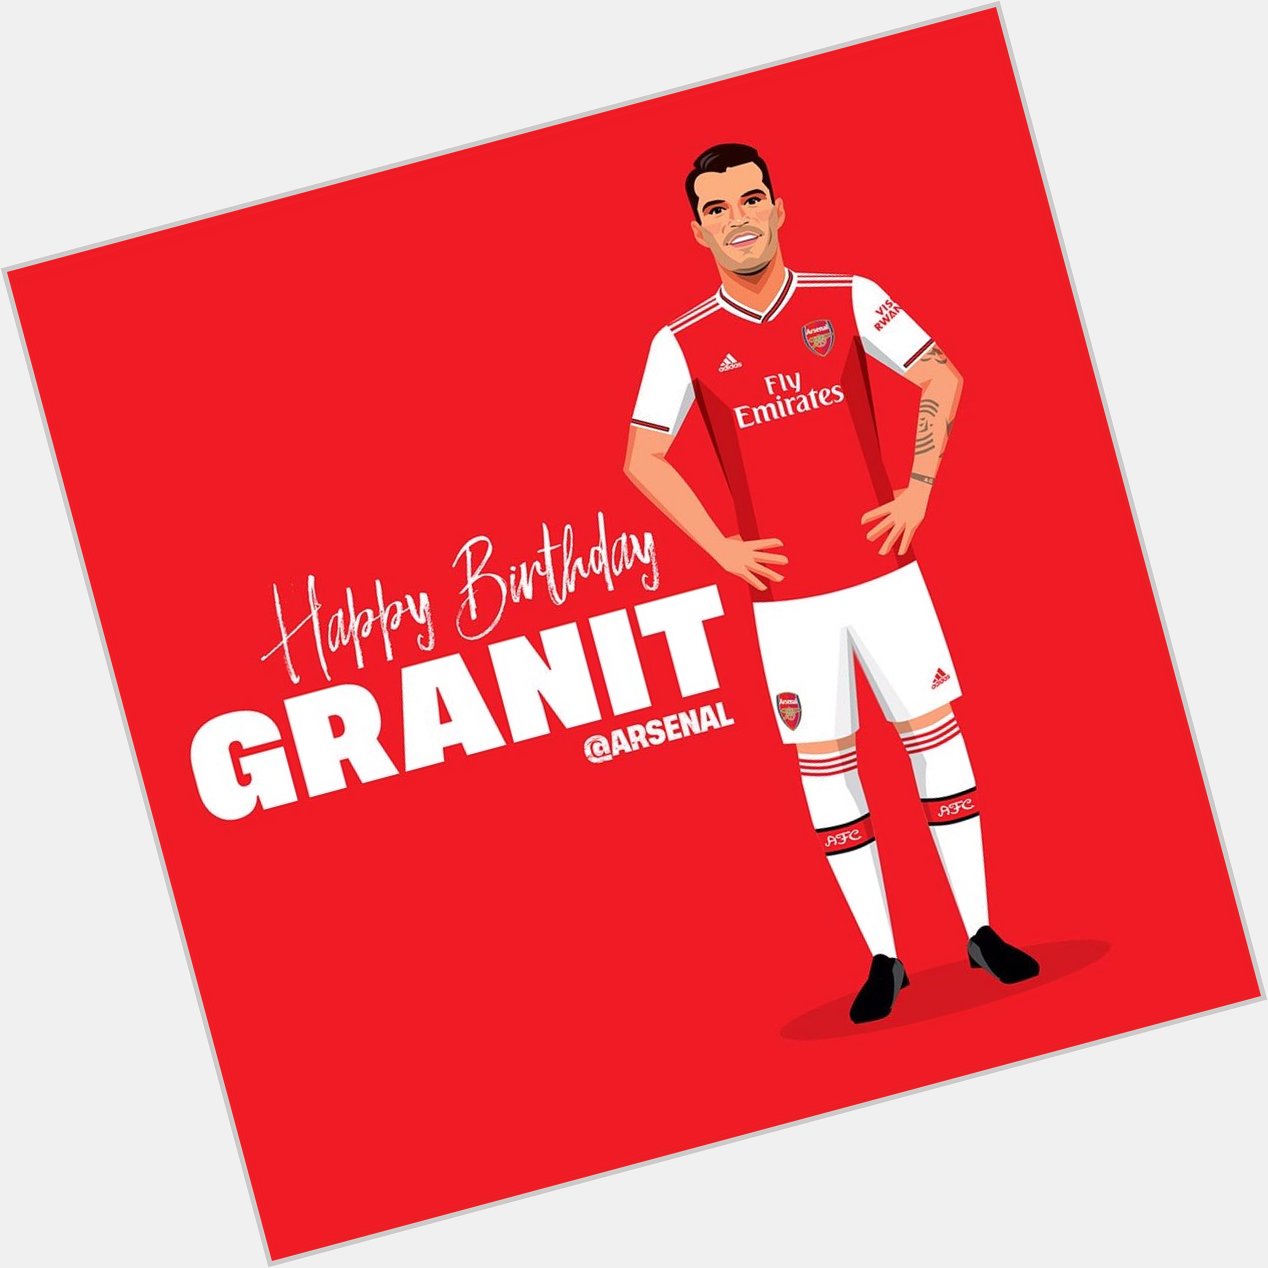 Happy birthday Granit Xhaka.
Best wishes 